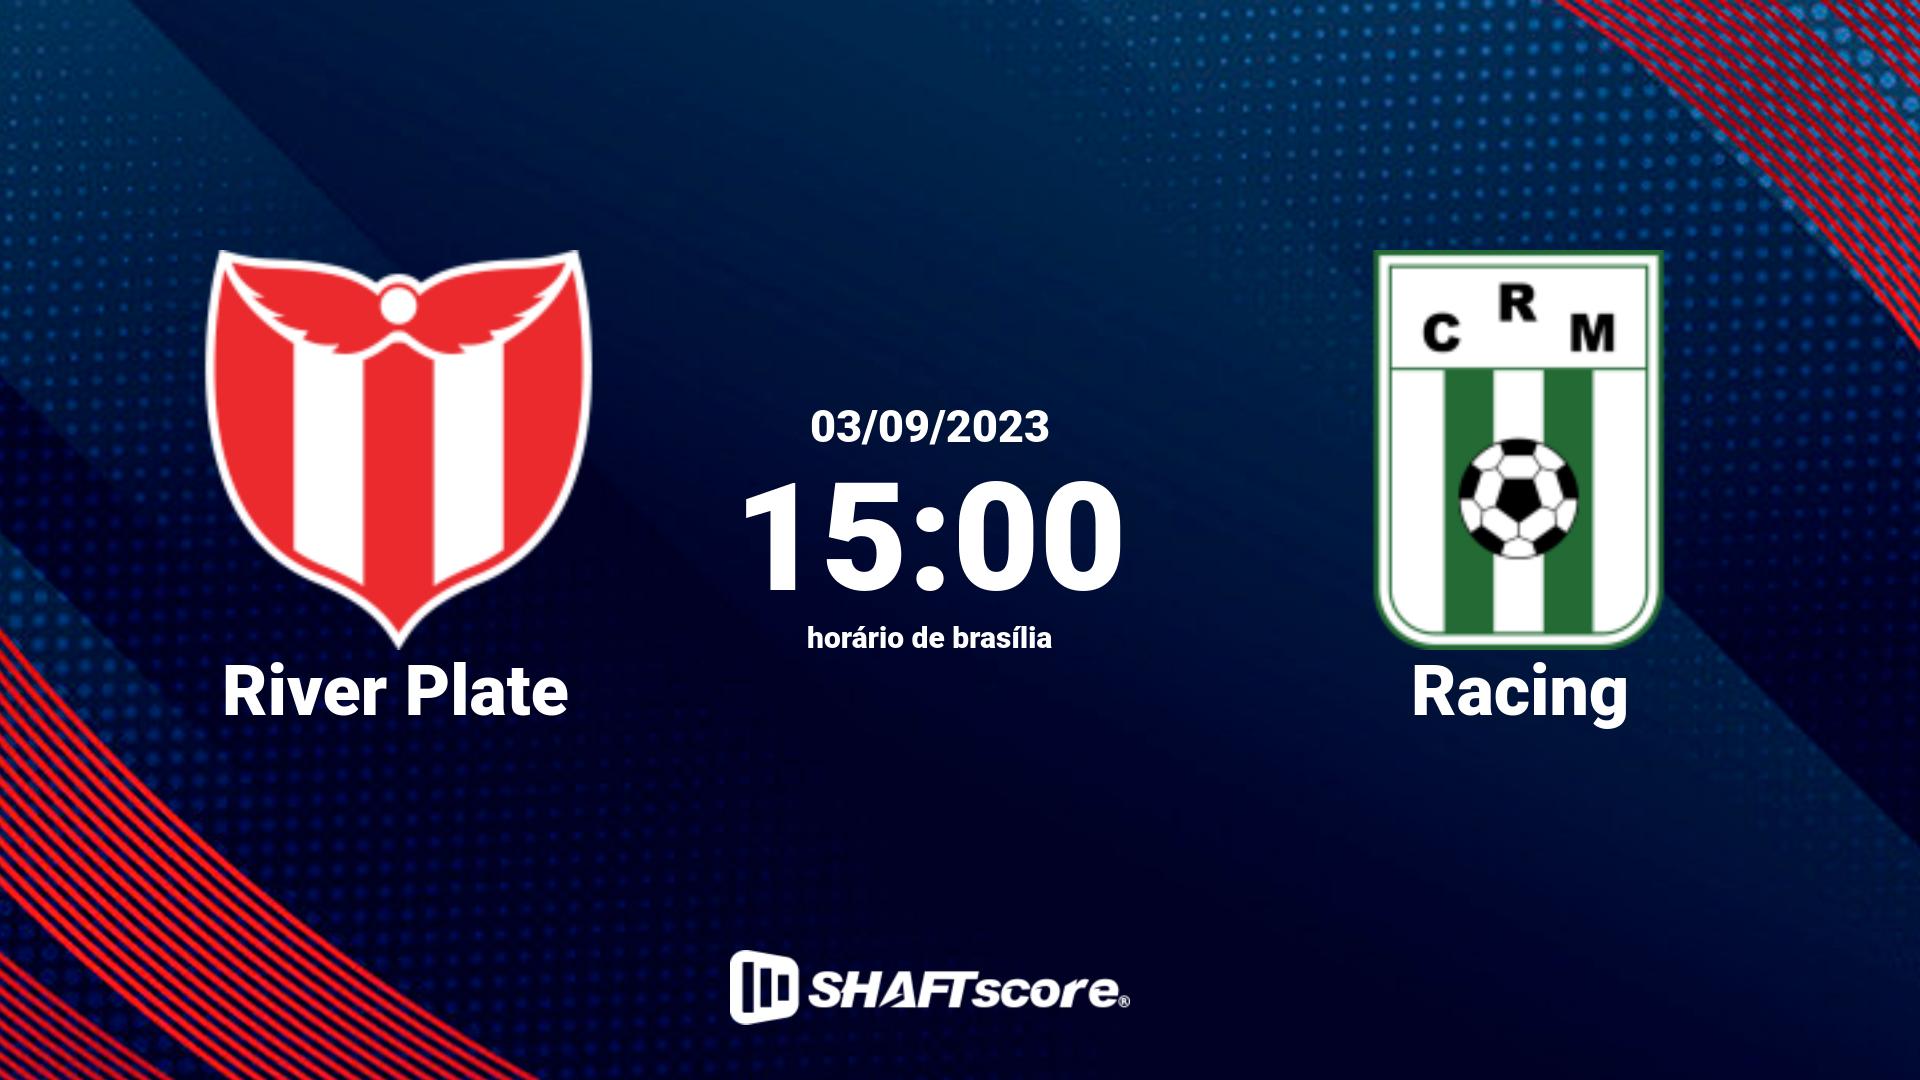 Estatísticas do jogo River Plate vs Racing 03.09 15:00